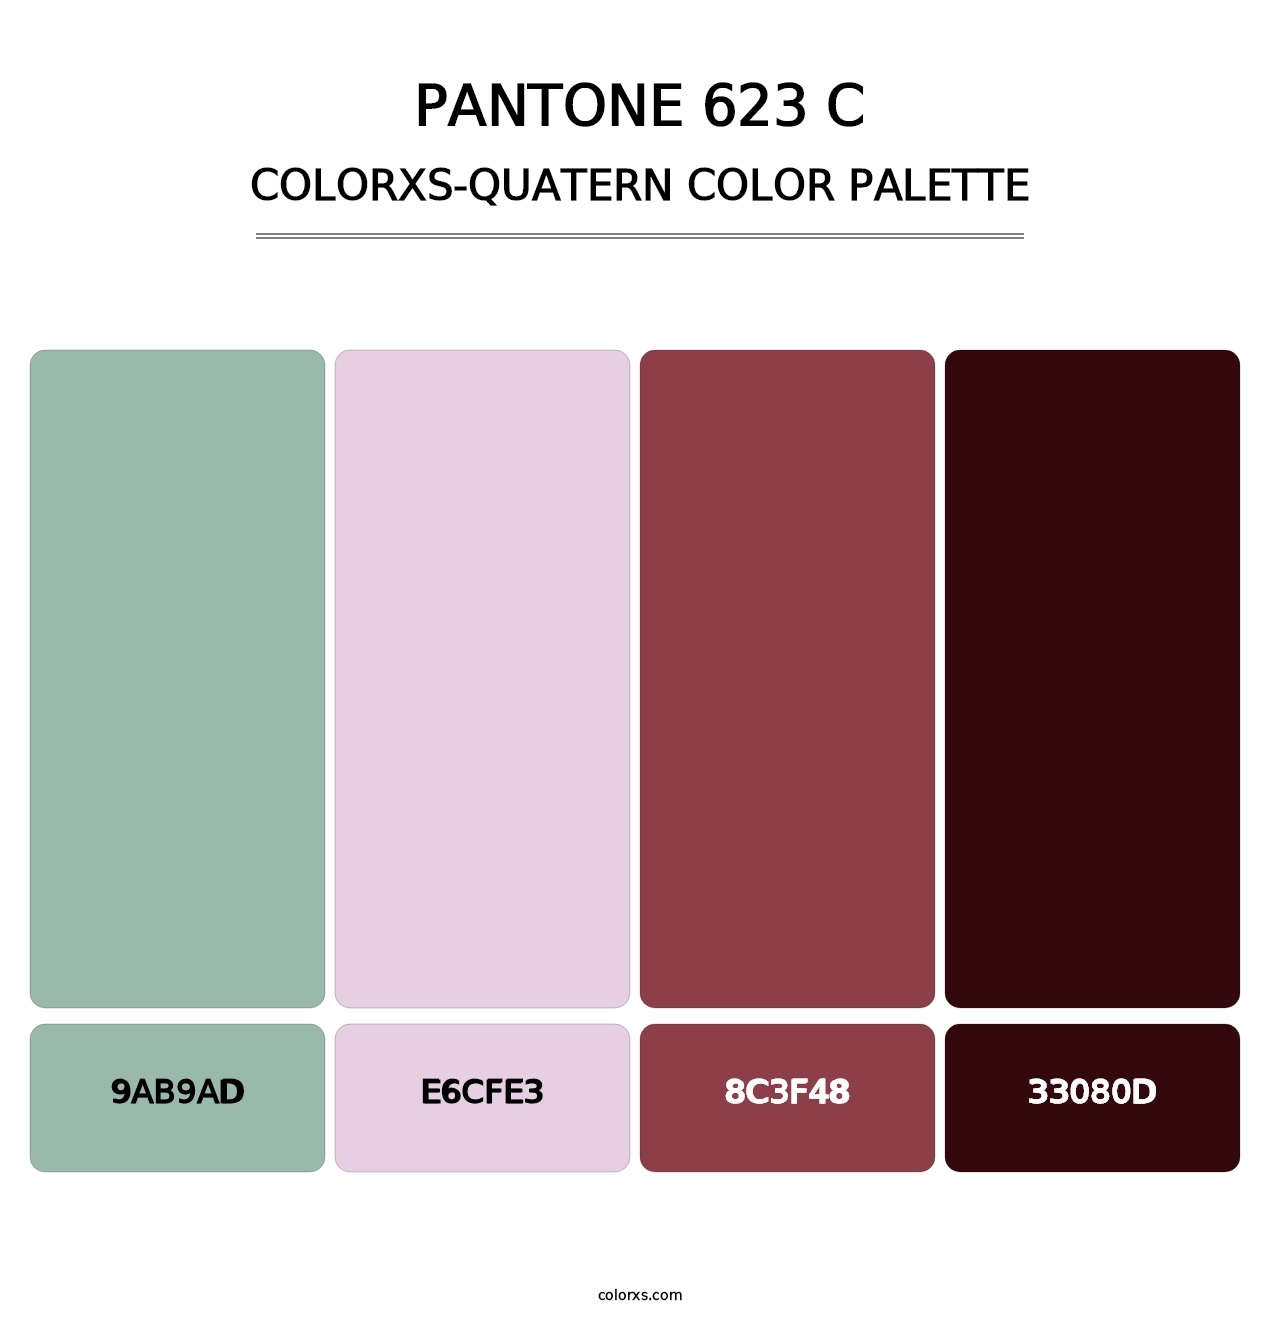 PANTONE 623 C - Colorxs Quatern Palette